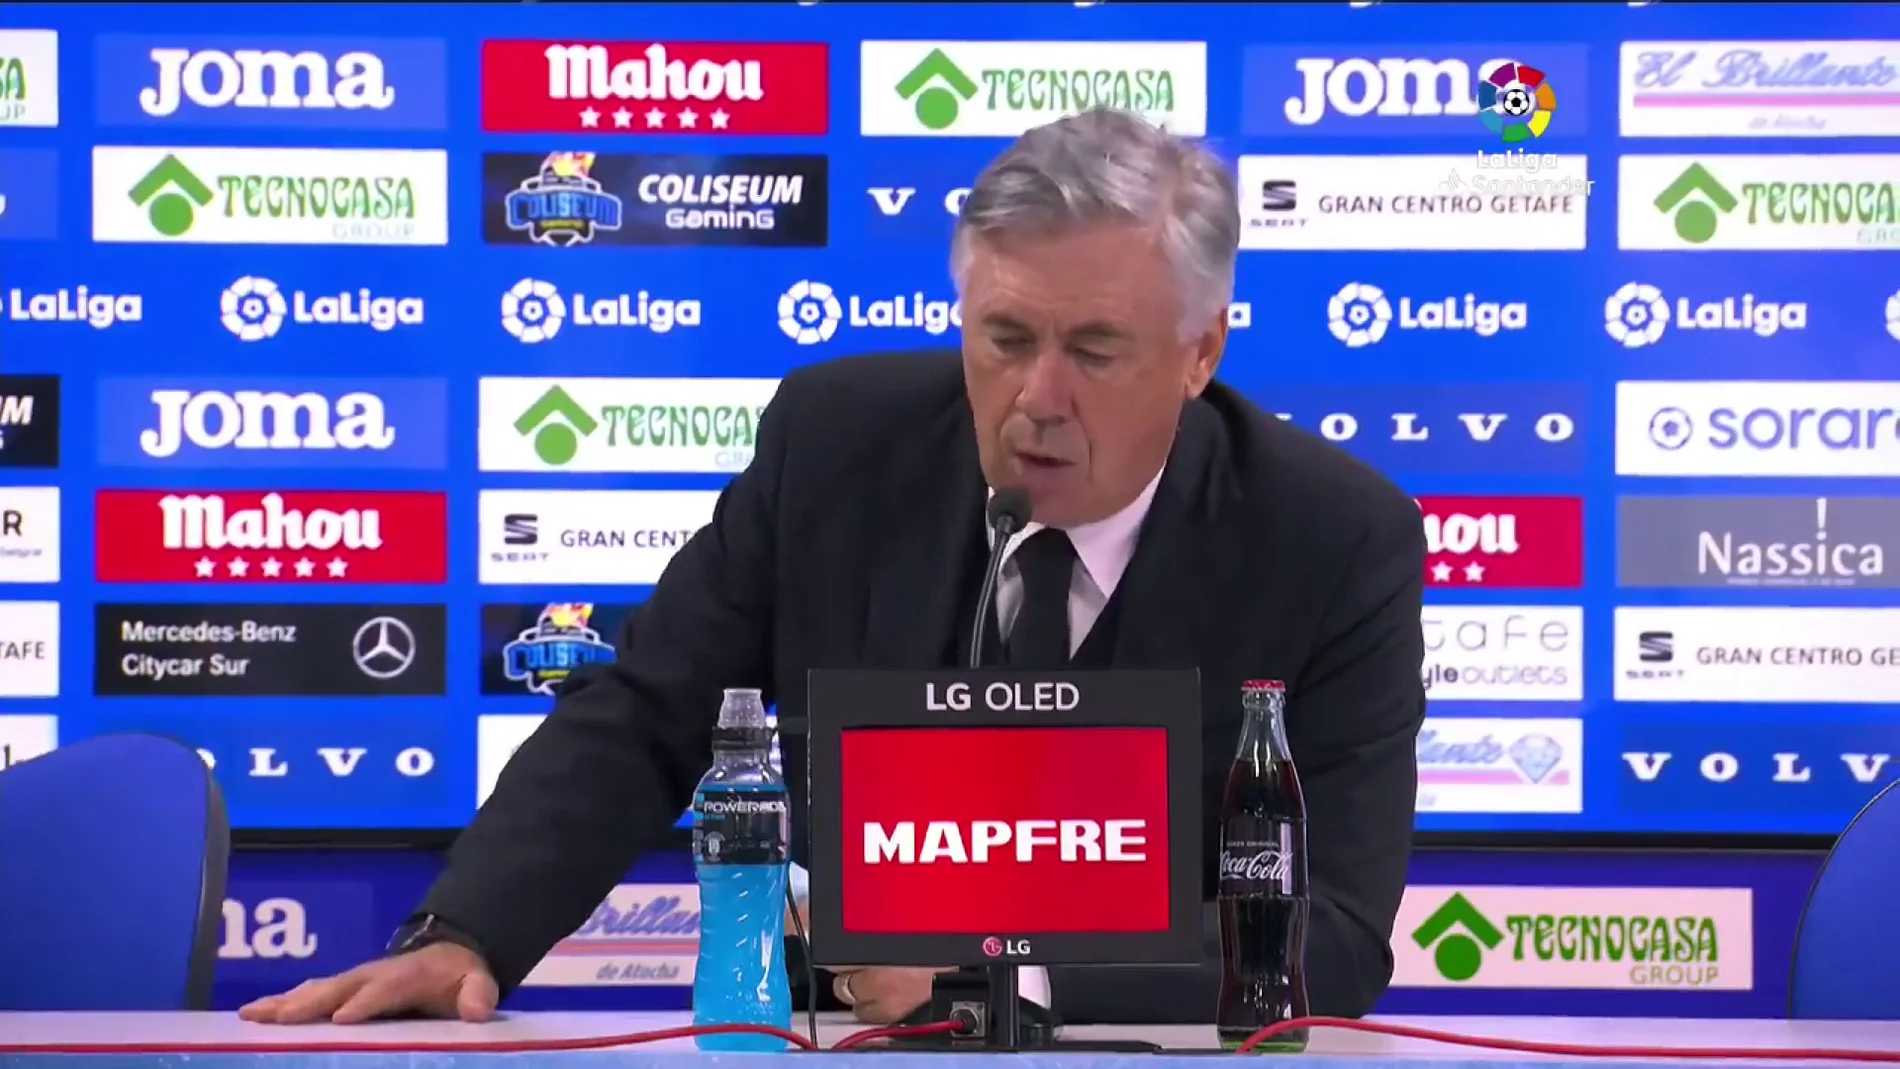 El divertido lapsus de Ancelotti al acabar su rueda de prensa: "Hola"